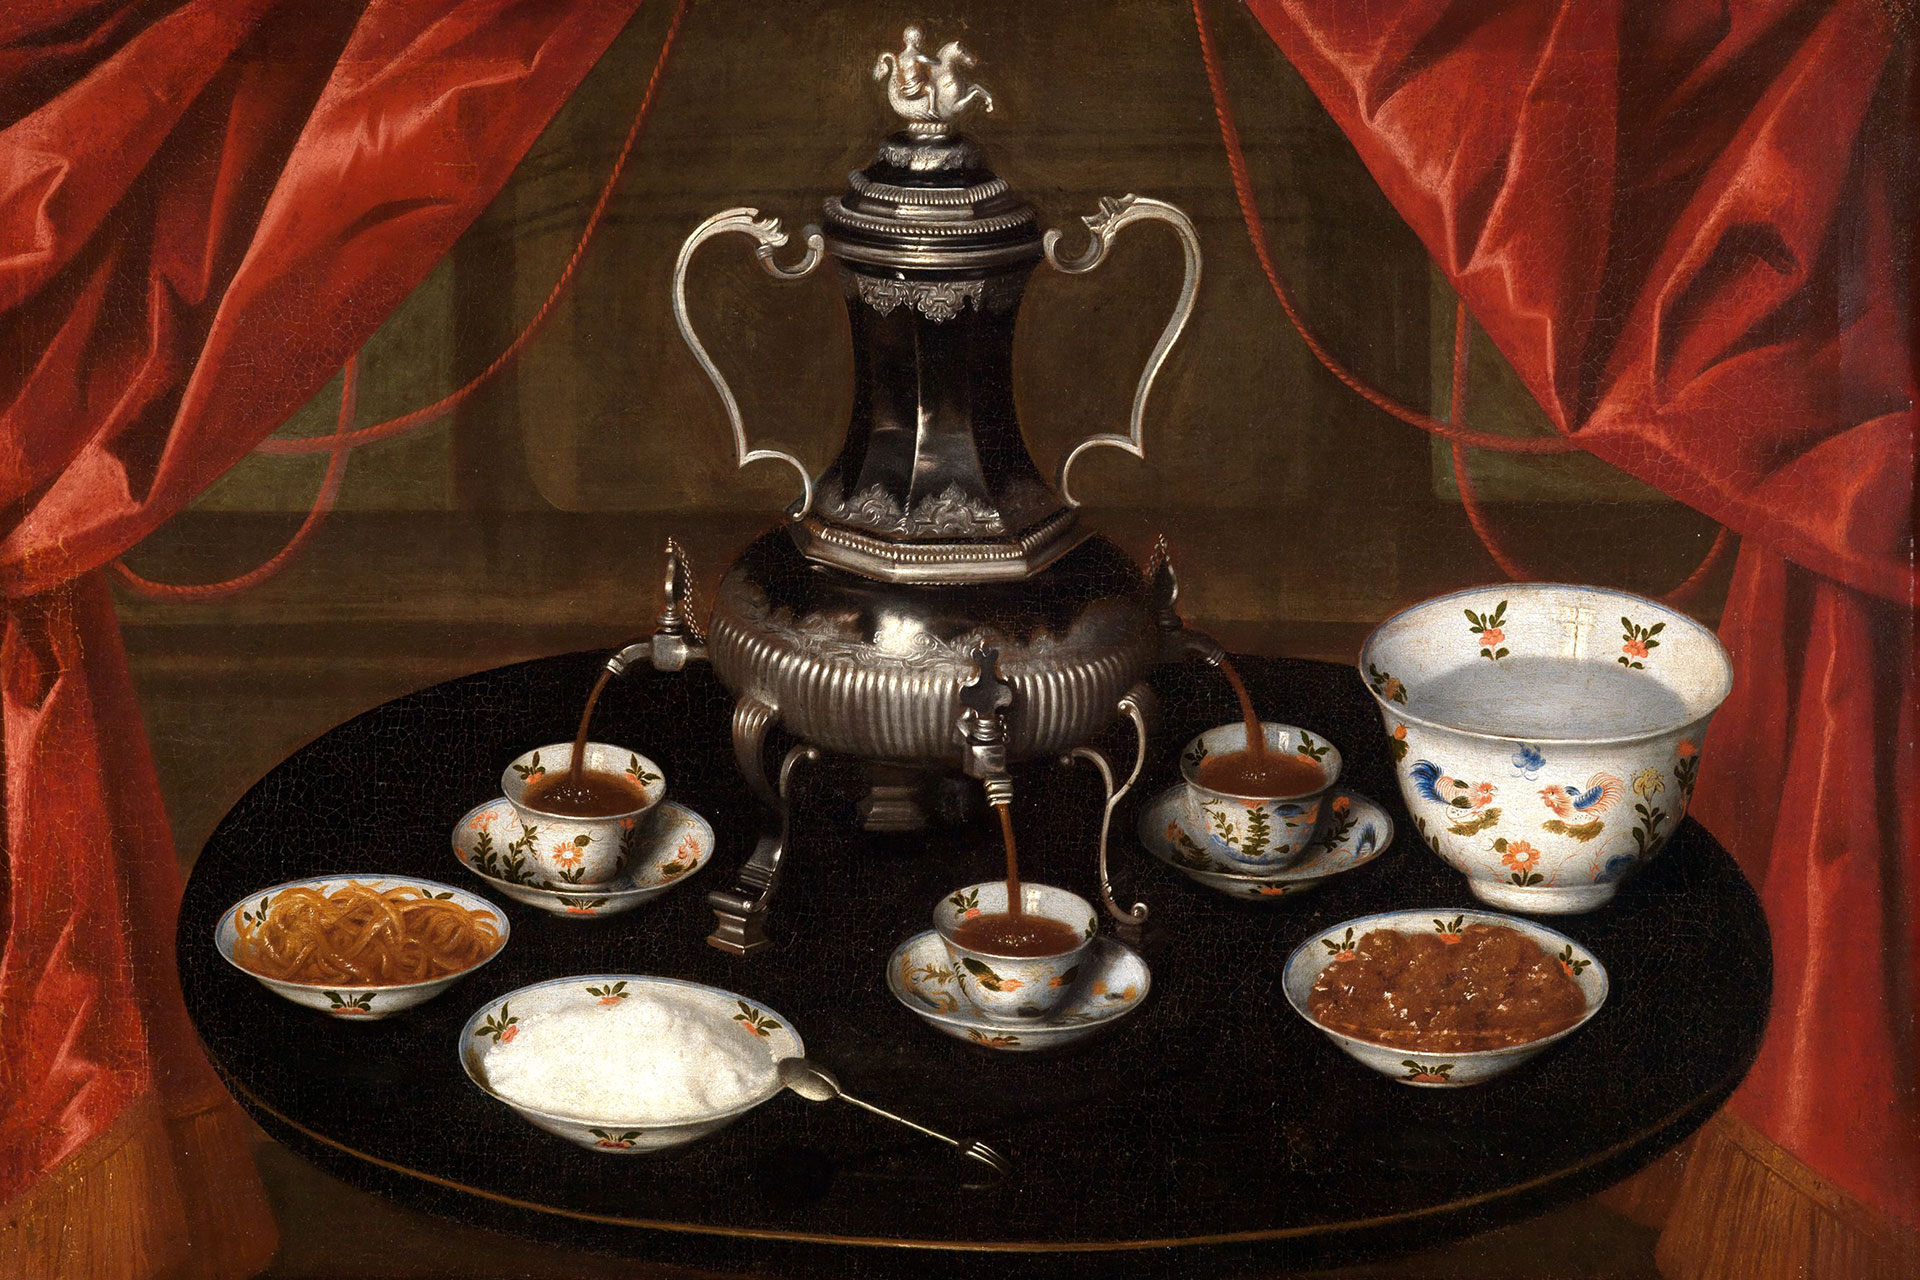 Kaffeetafel eines Deutschen Meisters. Zu sehen ist ein runder Tisch mit einem Samovar in der Mitte. Unter ihm stehen drei Tassen in die Kaffee hineinläuft. Auf dem Tisch stehen weitere Schalen mit Lebensmitteln. Im Hintergrund ist ein roter Vorhang.